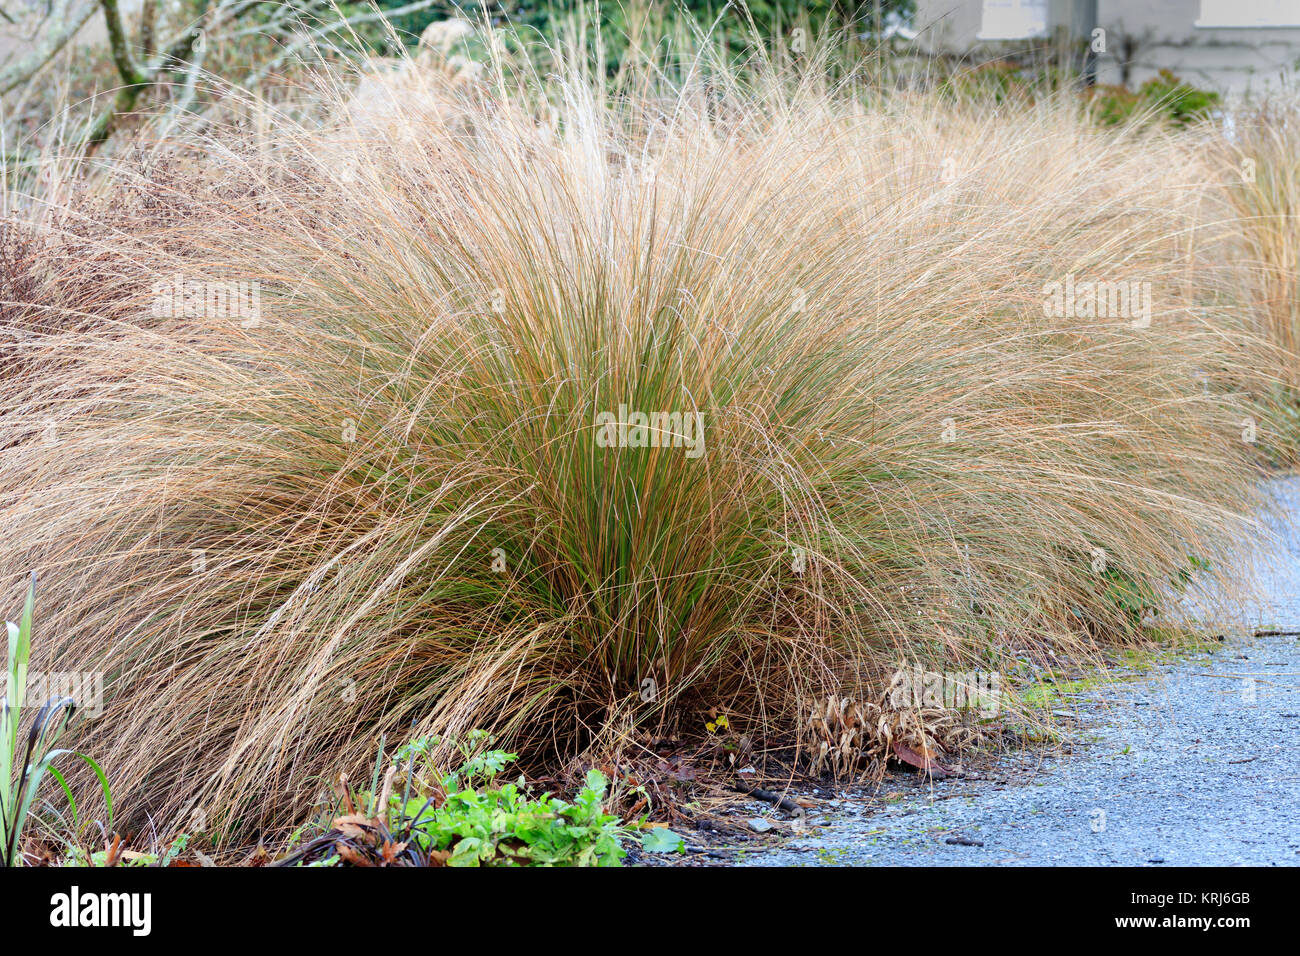 Arqueamiento tallos forman un montículo semicircular de la roja cespitosas hierba, Chionochloa rubra Foto de stock